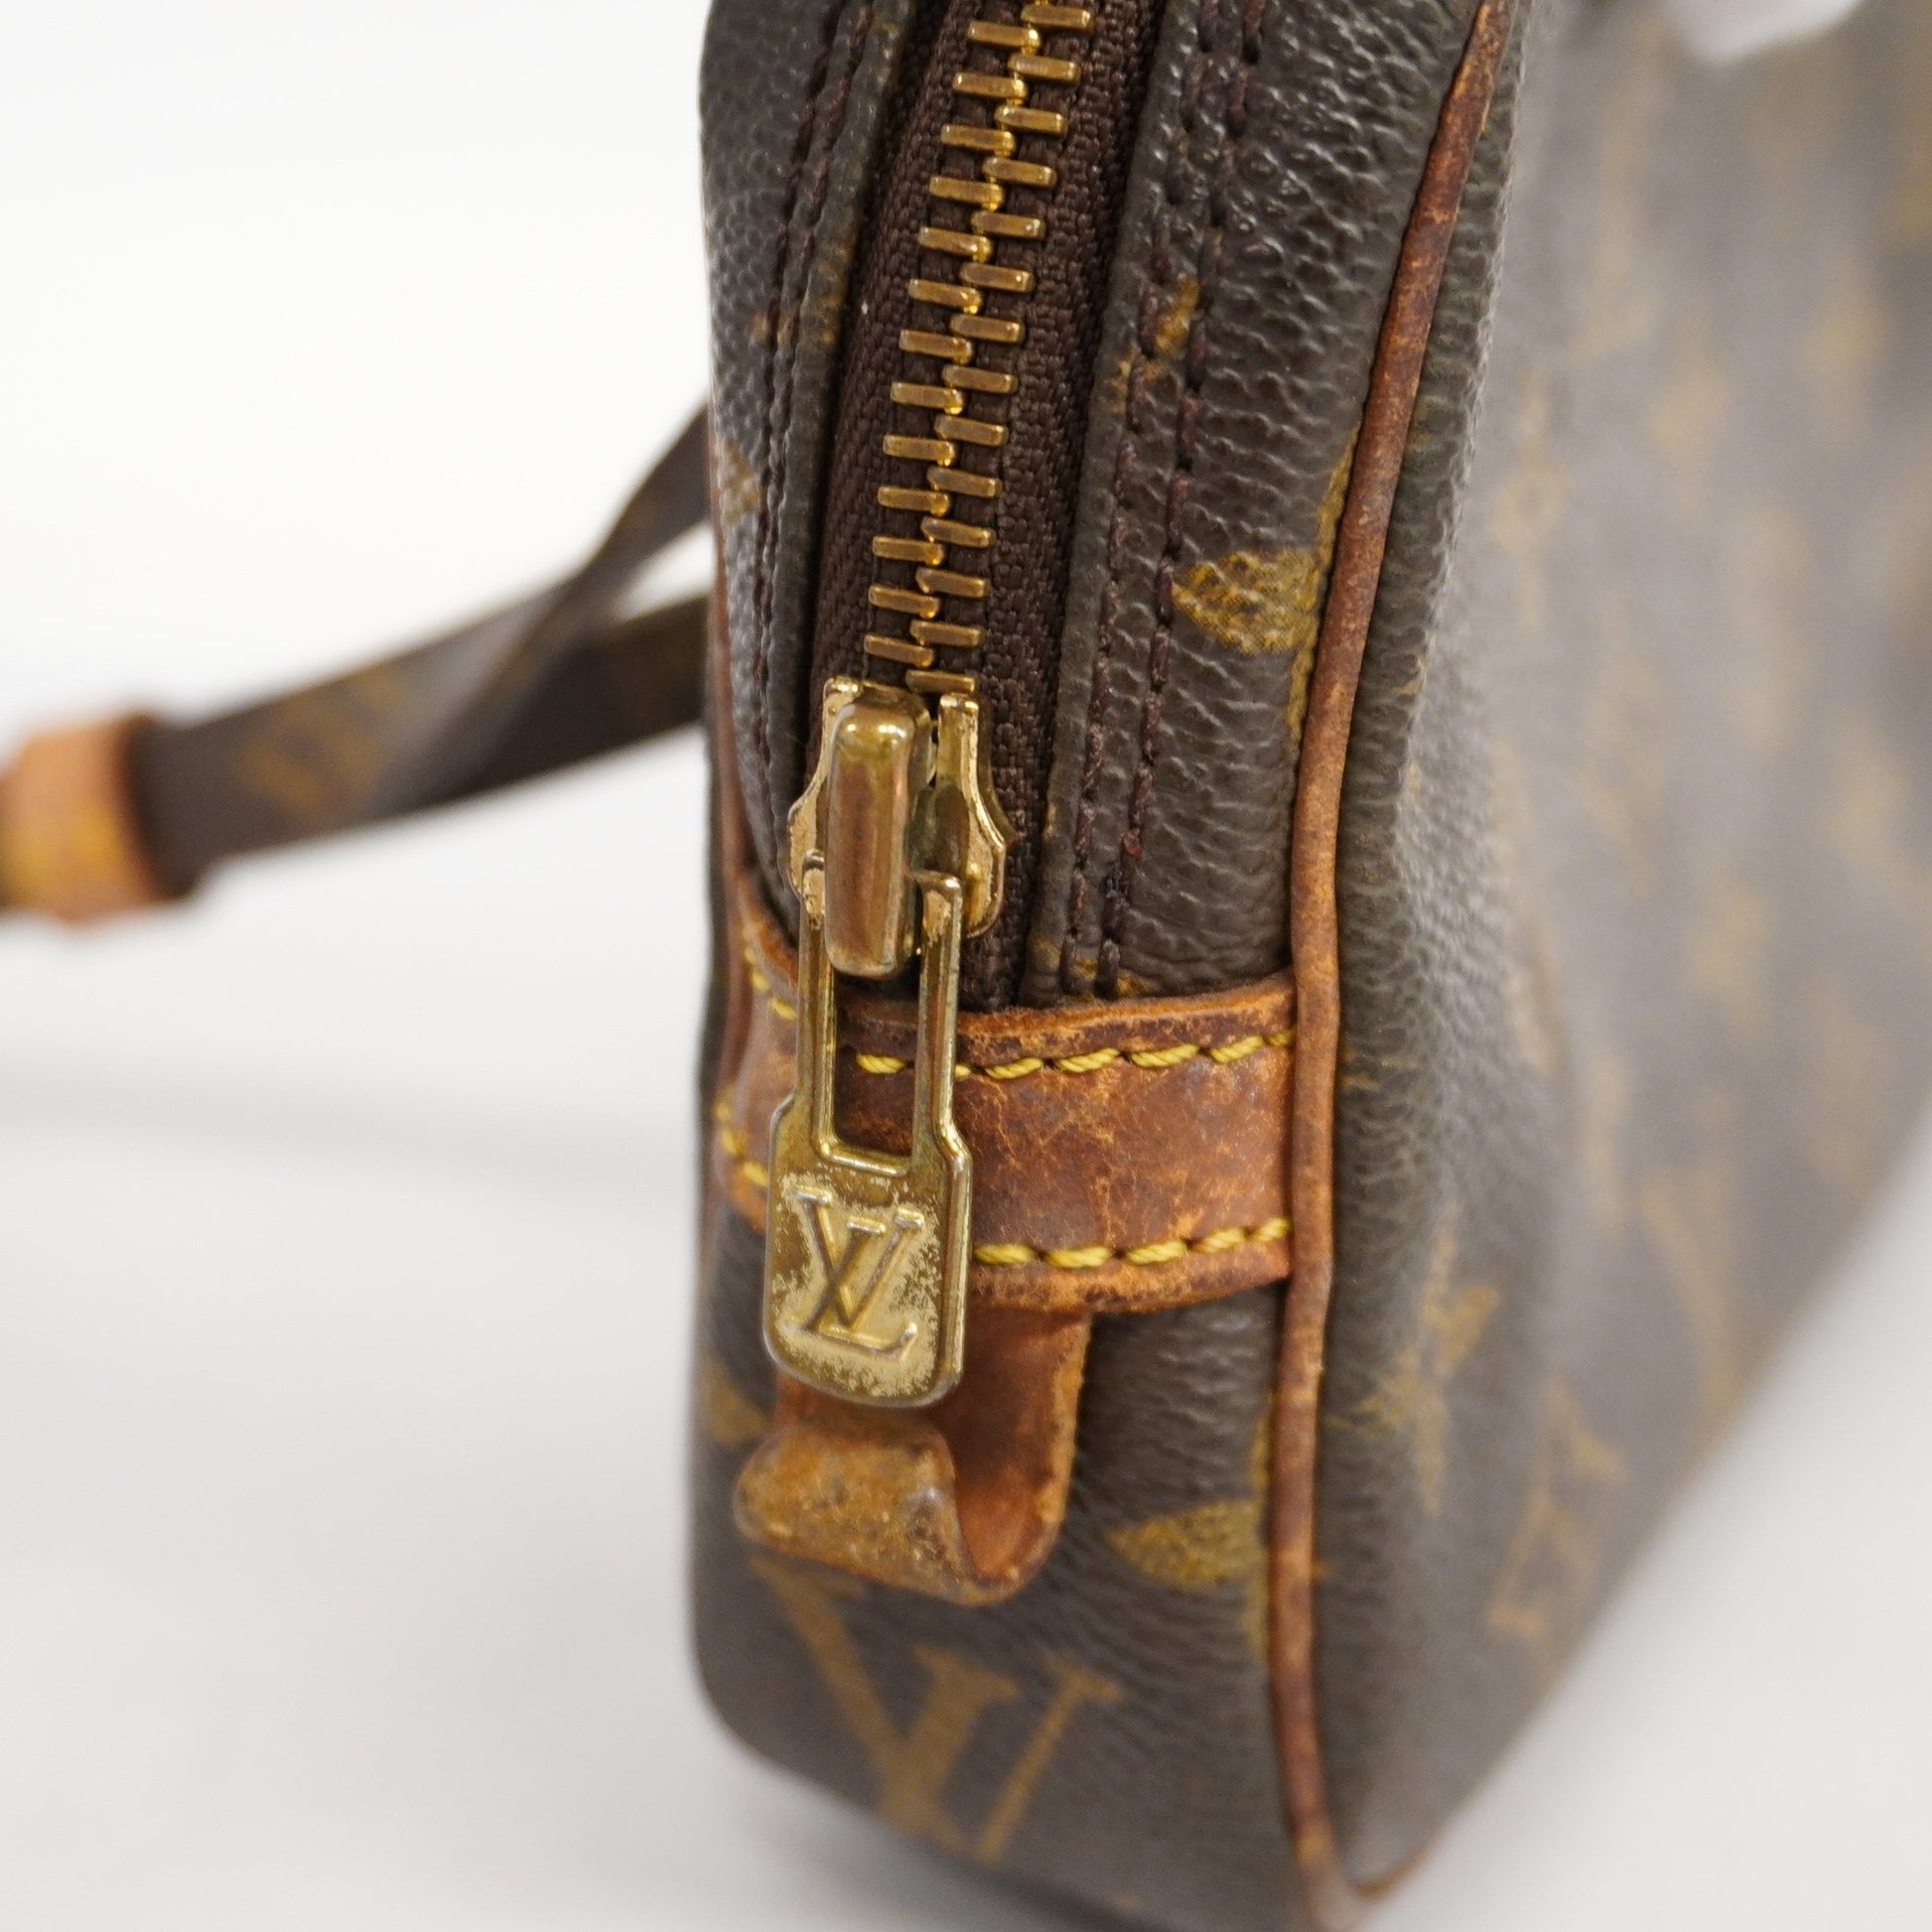 3ac2963] Auth Louis Vuitton Shoulder Bag Monogram Pochette Marly